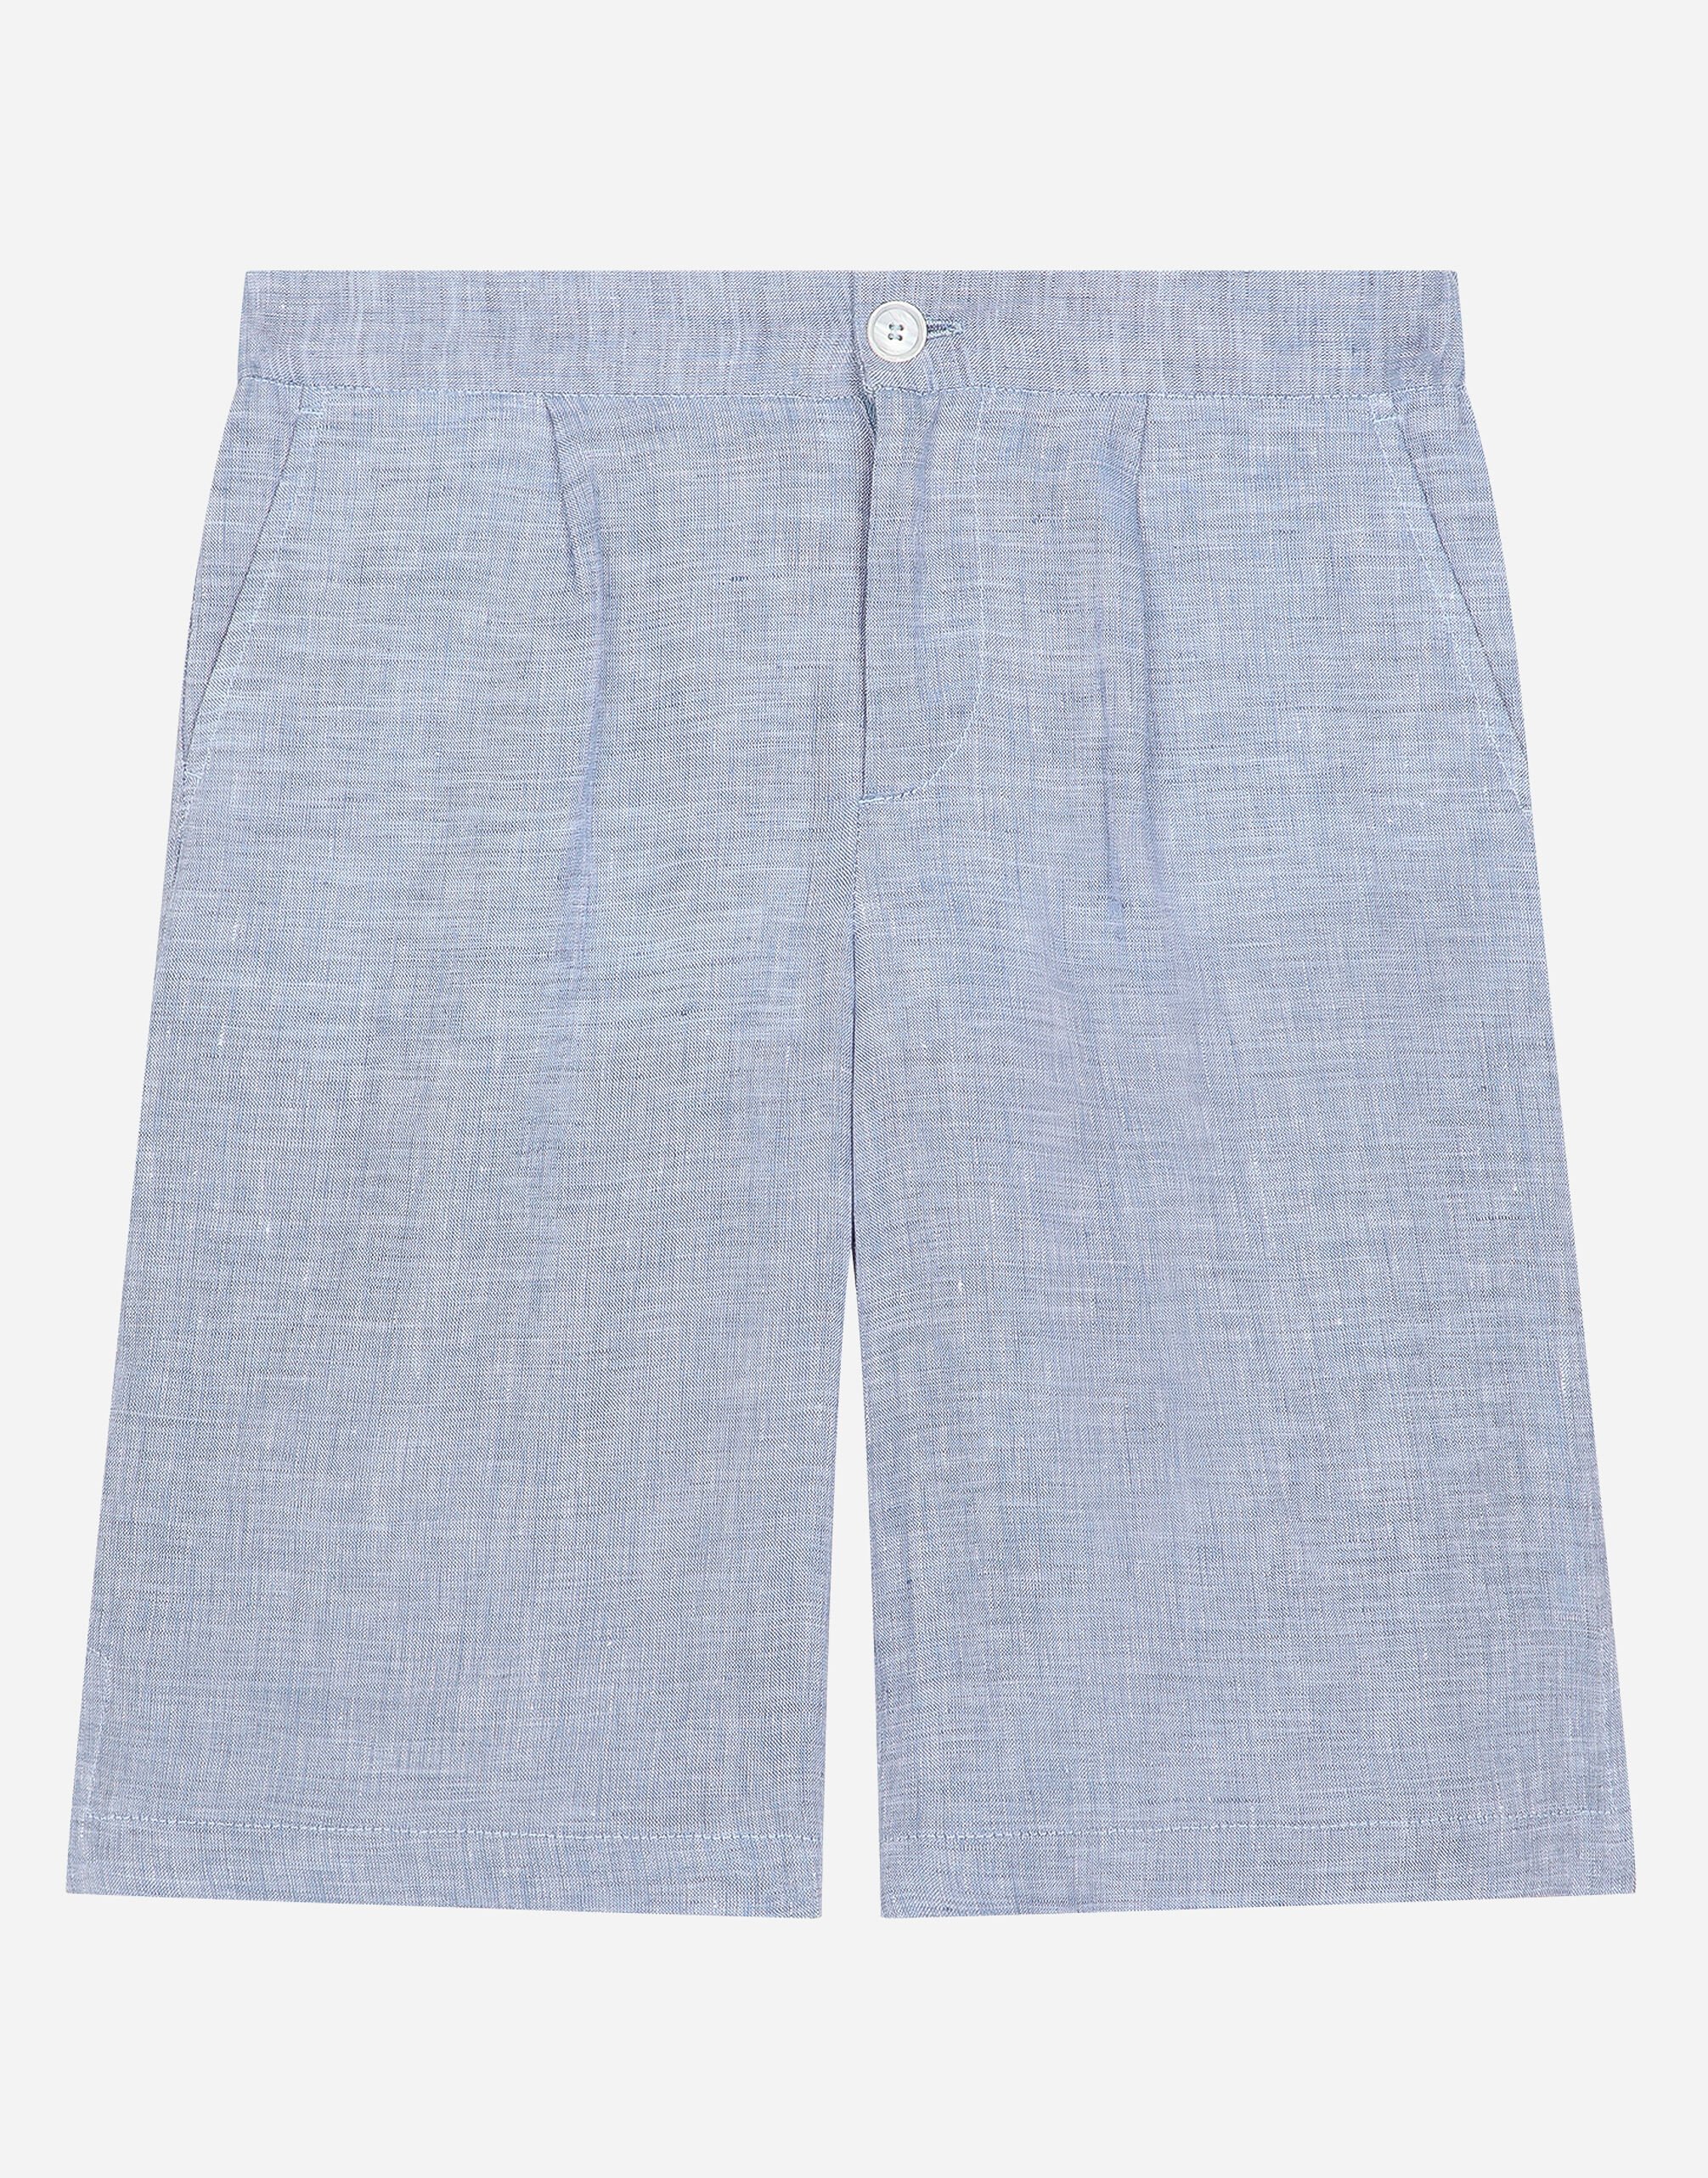 Dolce & Gabbana Non-stretch linen shorts Print L5J833FSG5V